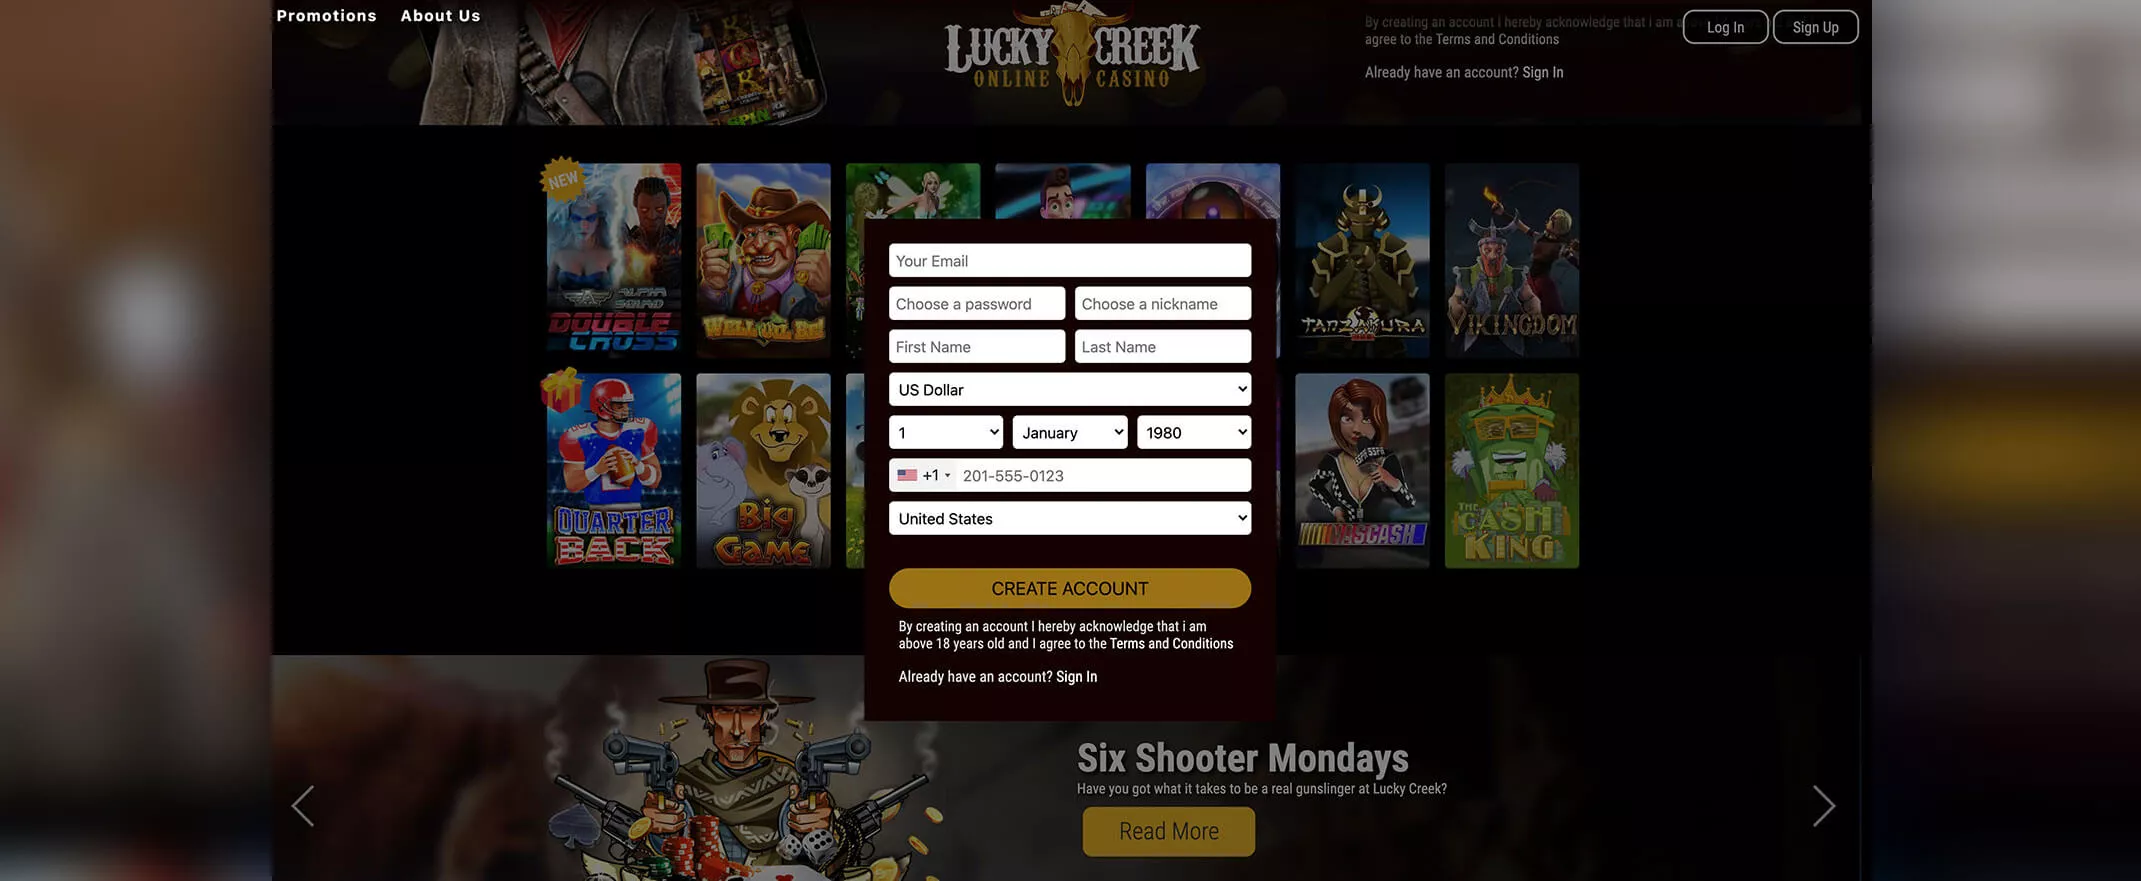 Lucky Creek registration screenshot